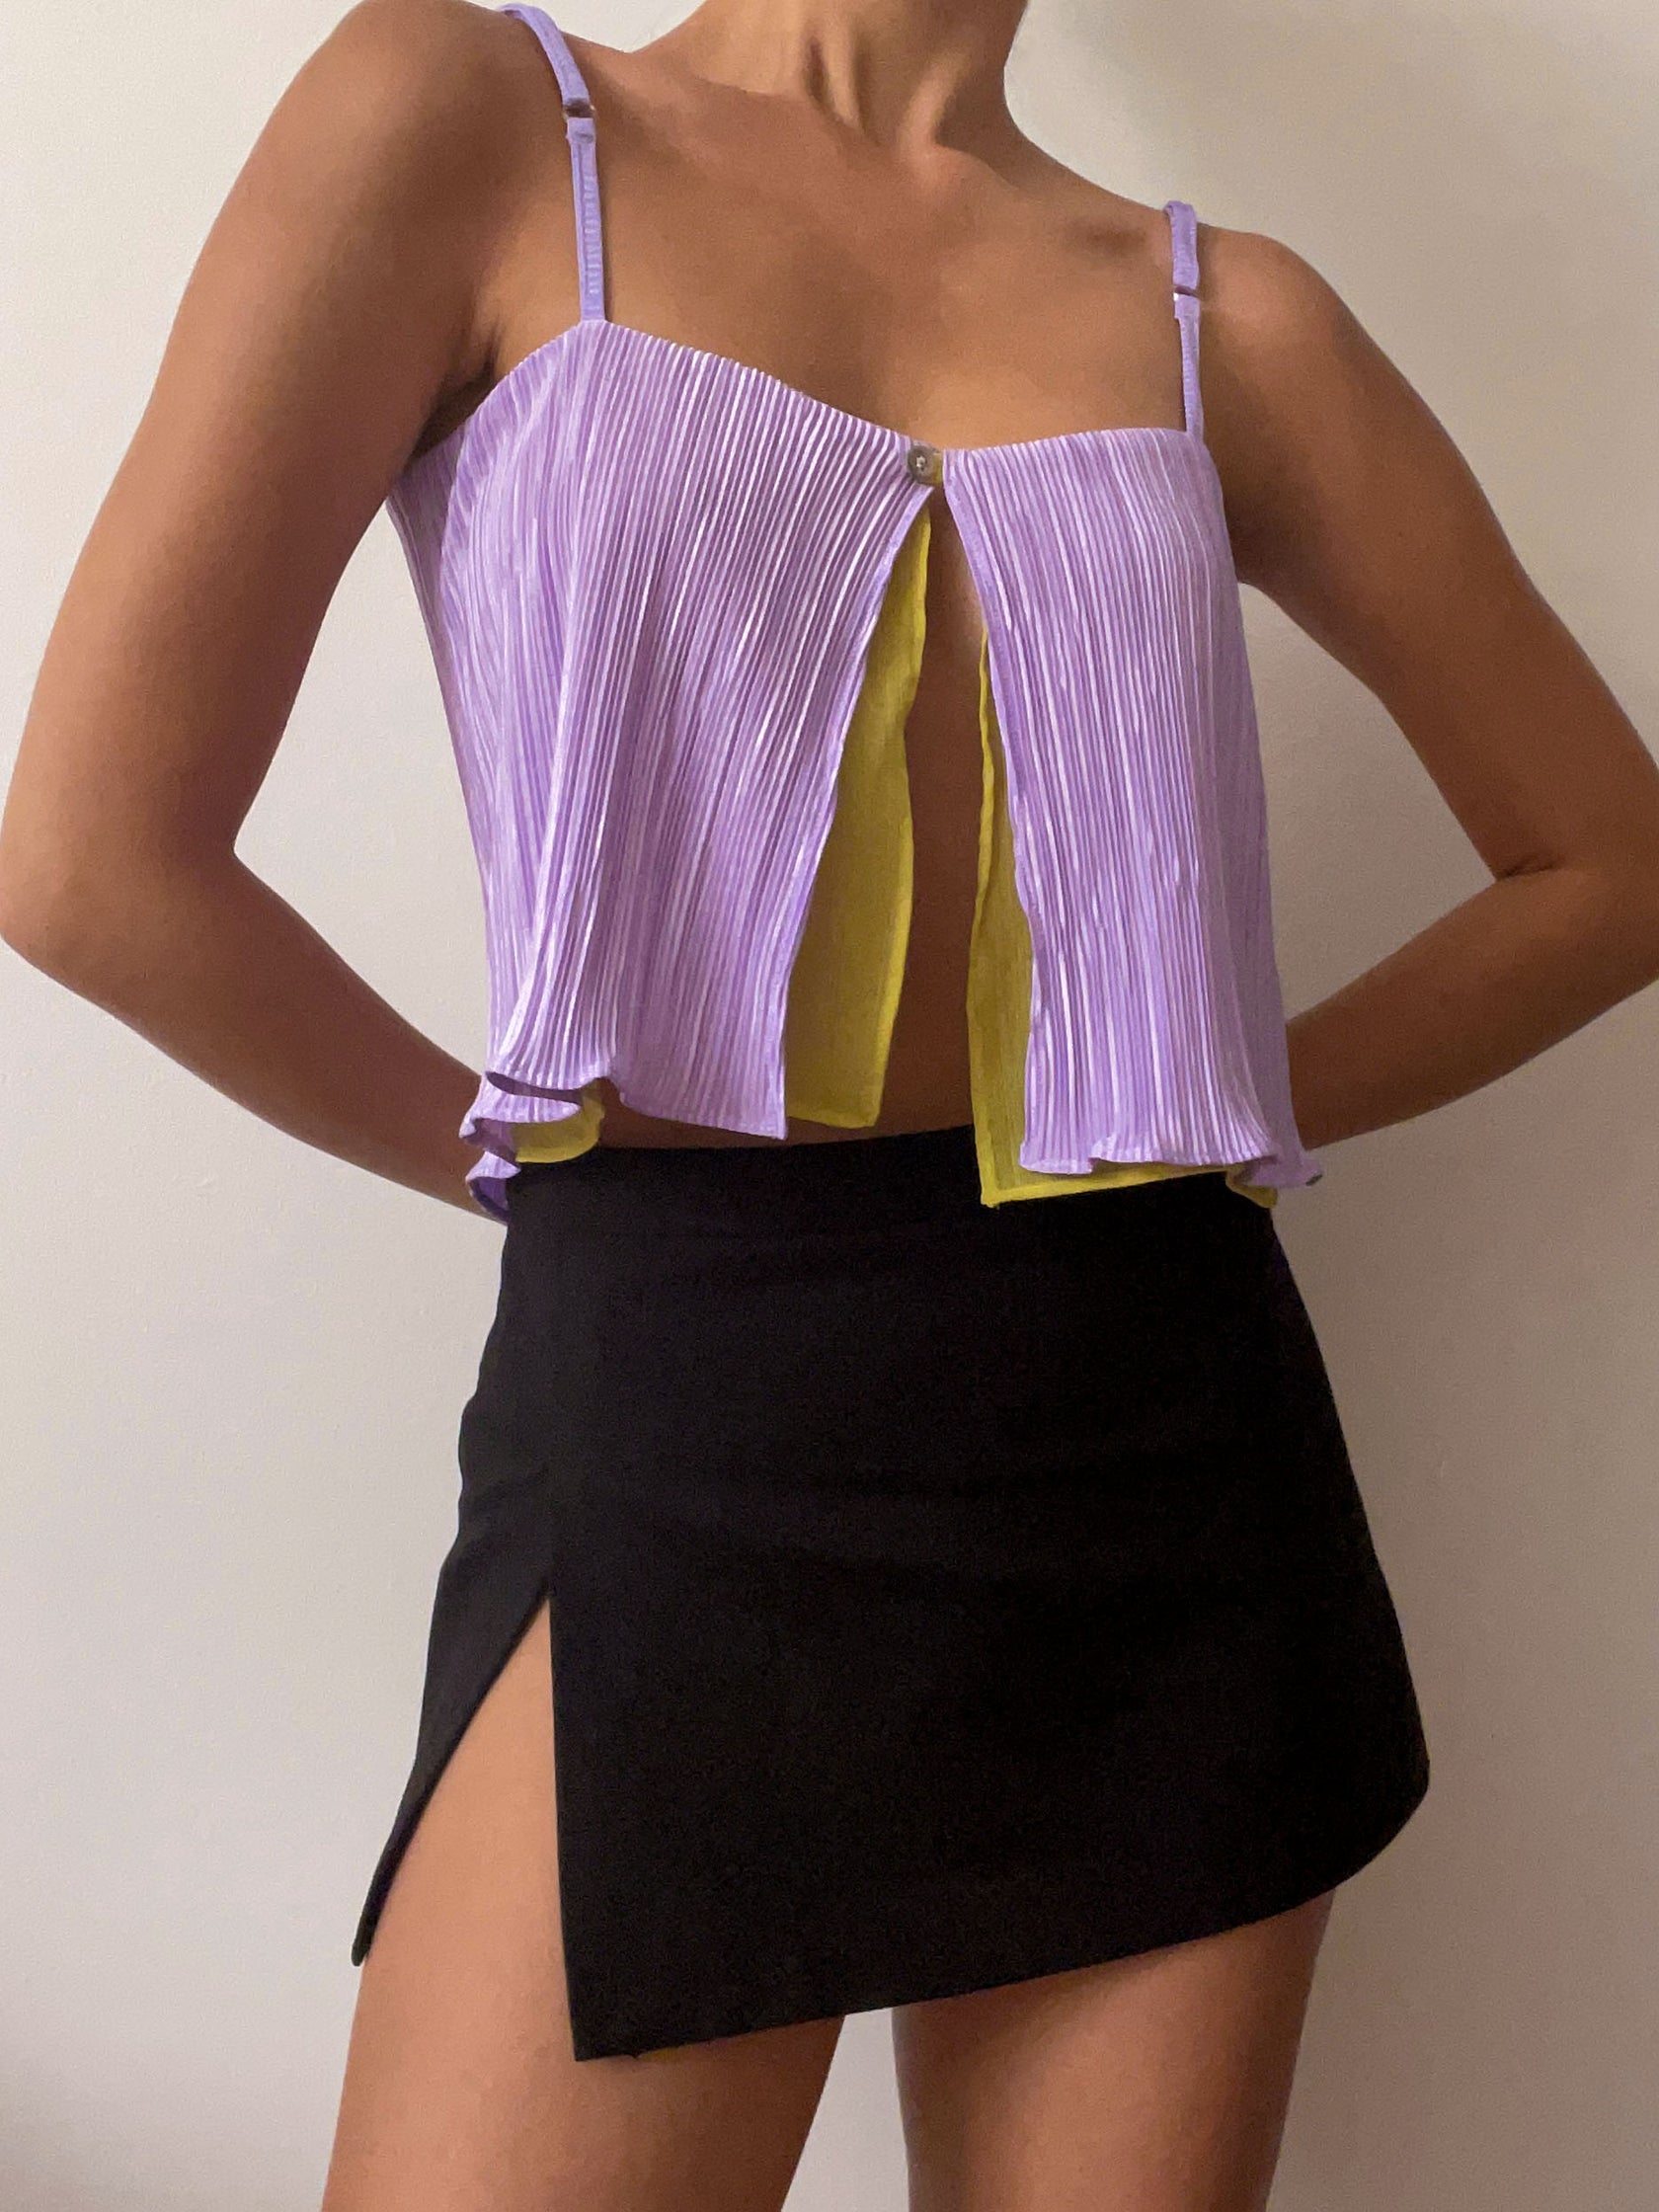 LILY top - lavendar – uniform person